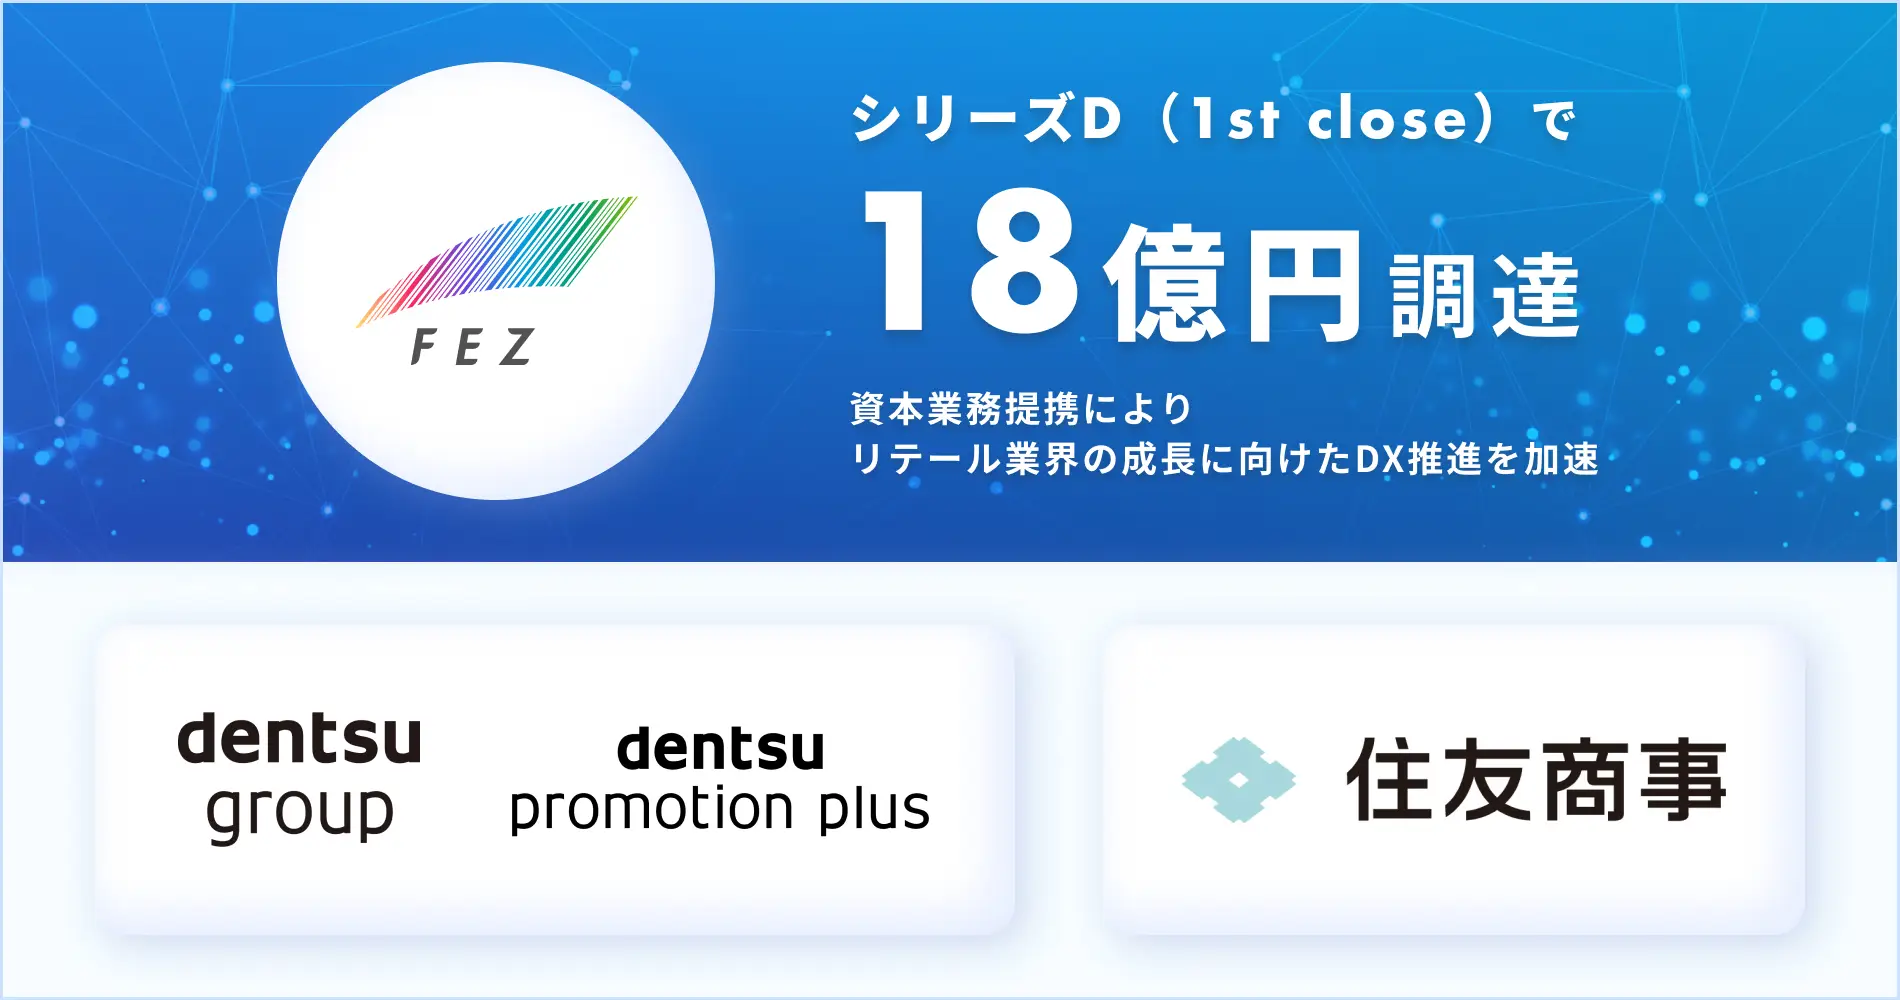 「CNET Japan」にてシリーズDラウンド（1st close）での資金調達および業務提携に関する記事が掲載されました